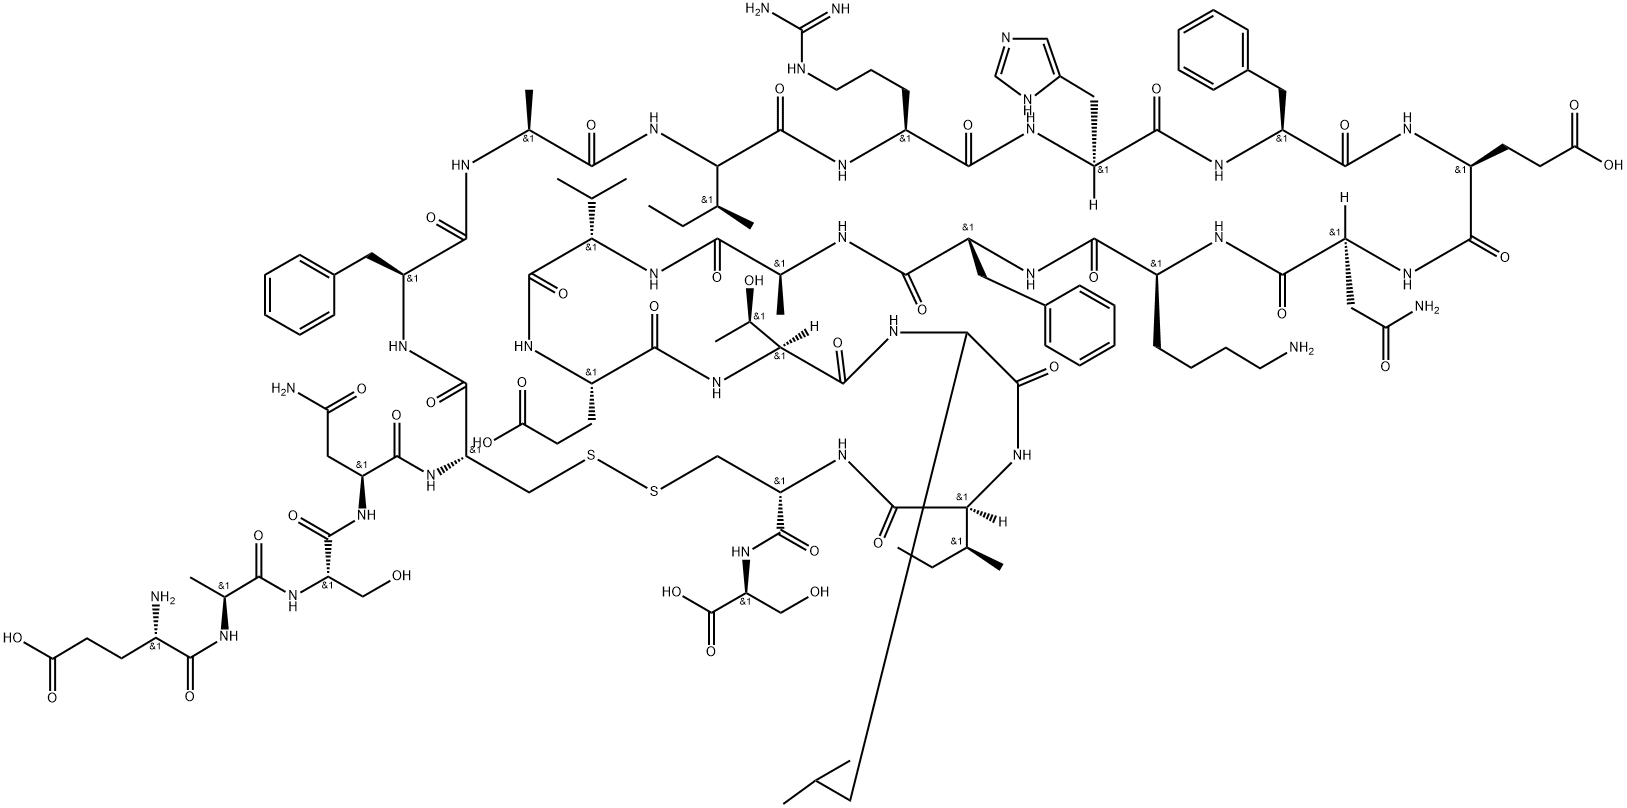 717122-86-6 淀粉样蛋白前体肽Amyloid Bri Protein (1-23)